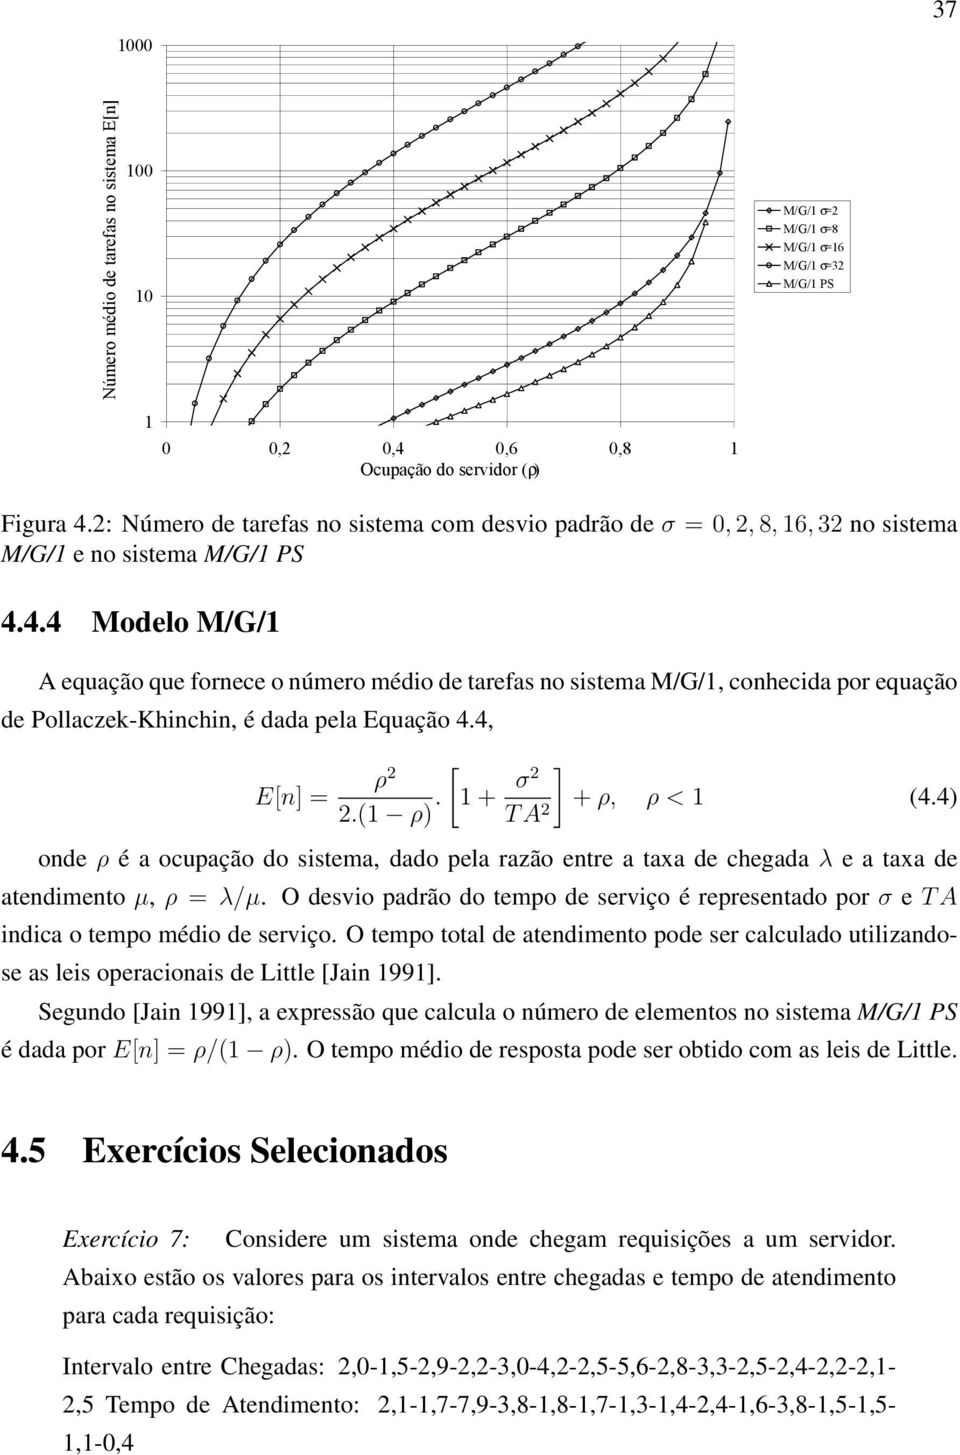 4.4 Modelo M/G/1 A equação que fornece o número médio de tarefas no sistema M/G/1, conhecida por equação de Pollaczek-Khinchin, é dada pela Equação 4.4, E[n] = ] ρ [1+ 2 2.(1 ρ). σ2 +ρ, ρ < 1 (4.